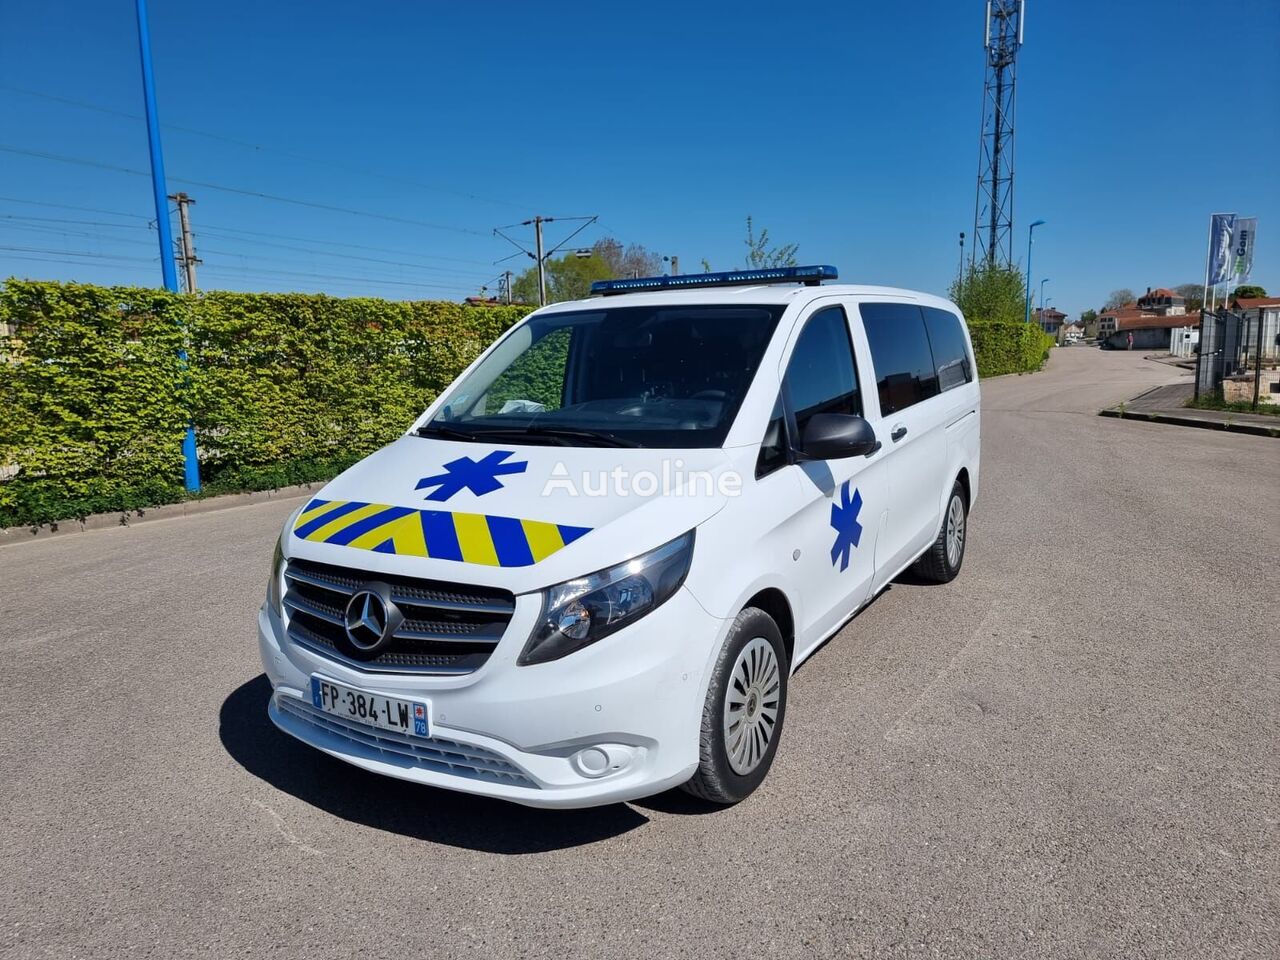 Mercedes-Benz VITO L1H1 136 CV - 200 000 km - 2021  ambulance